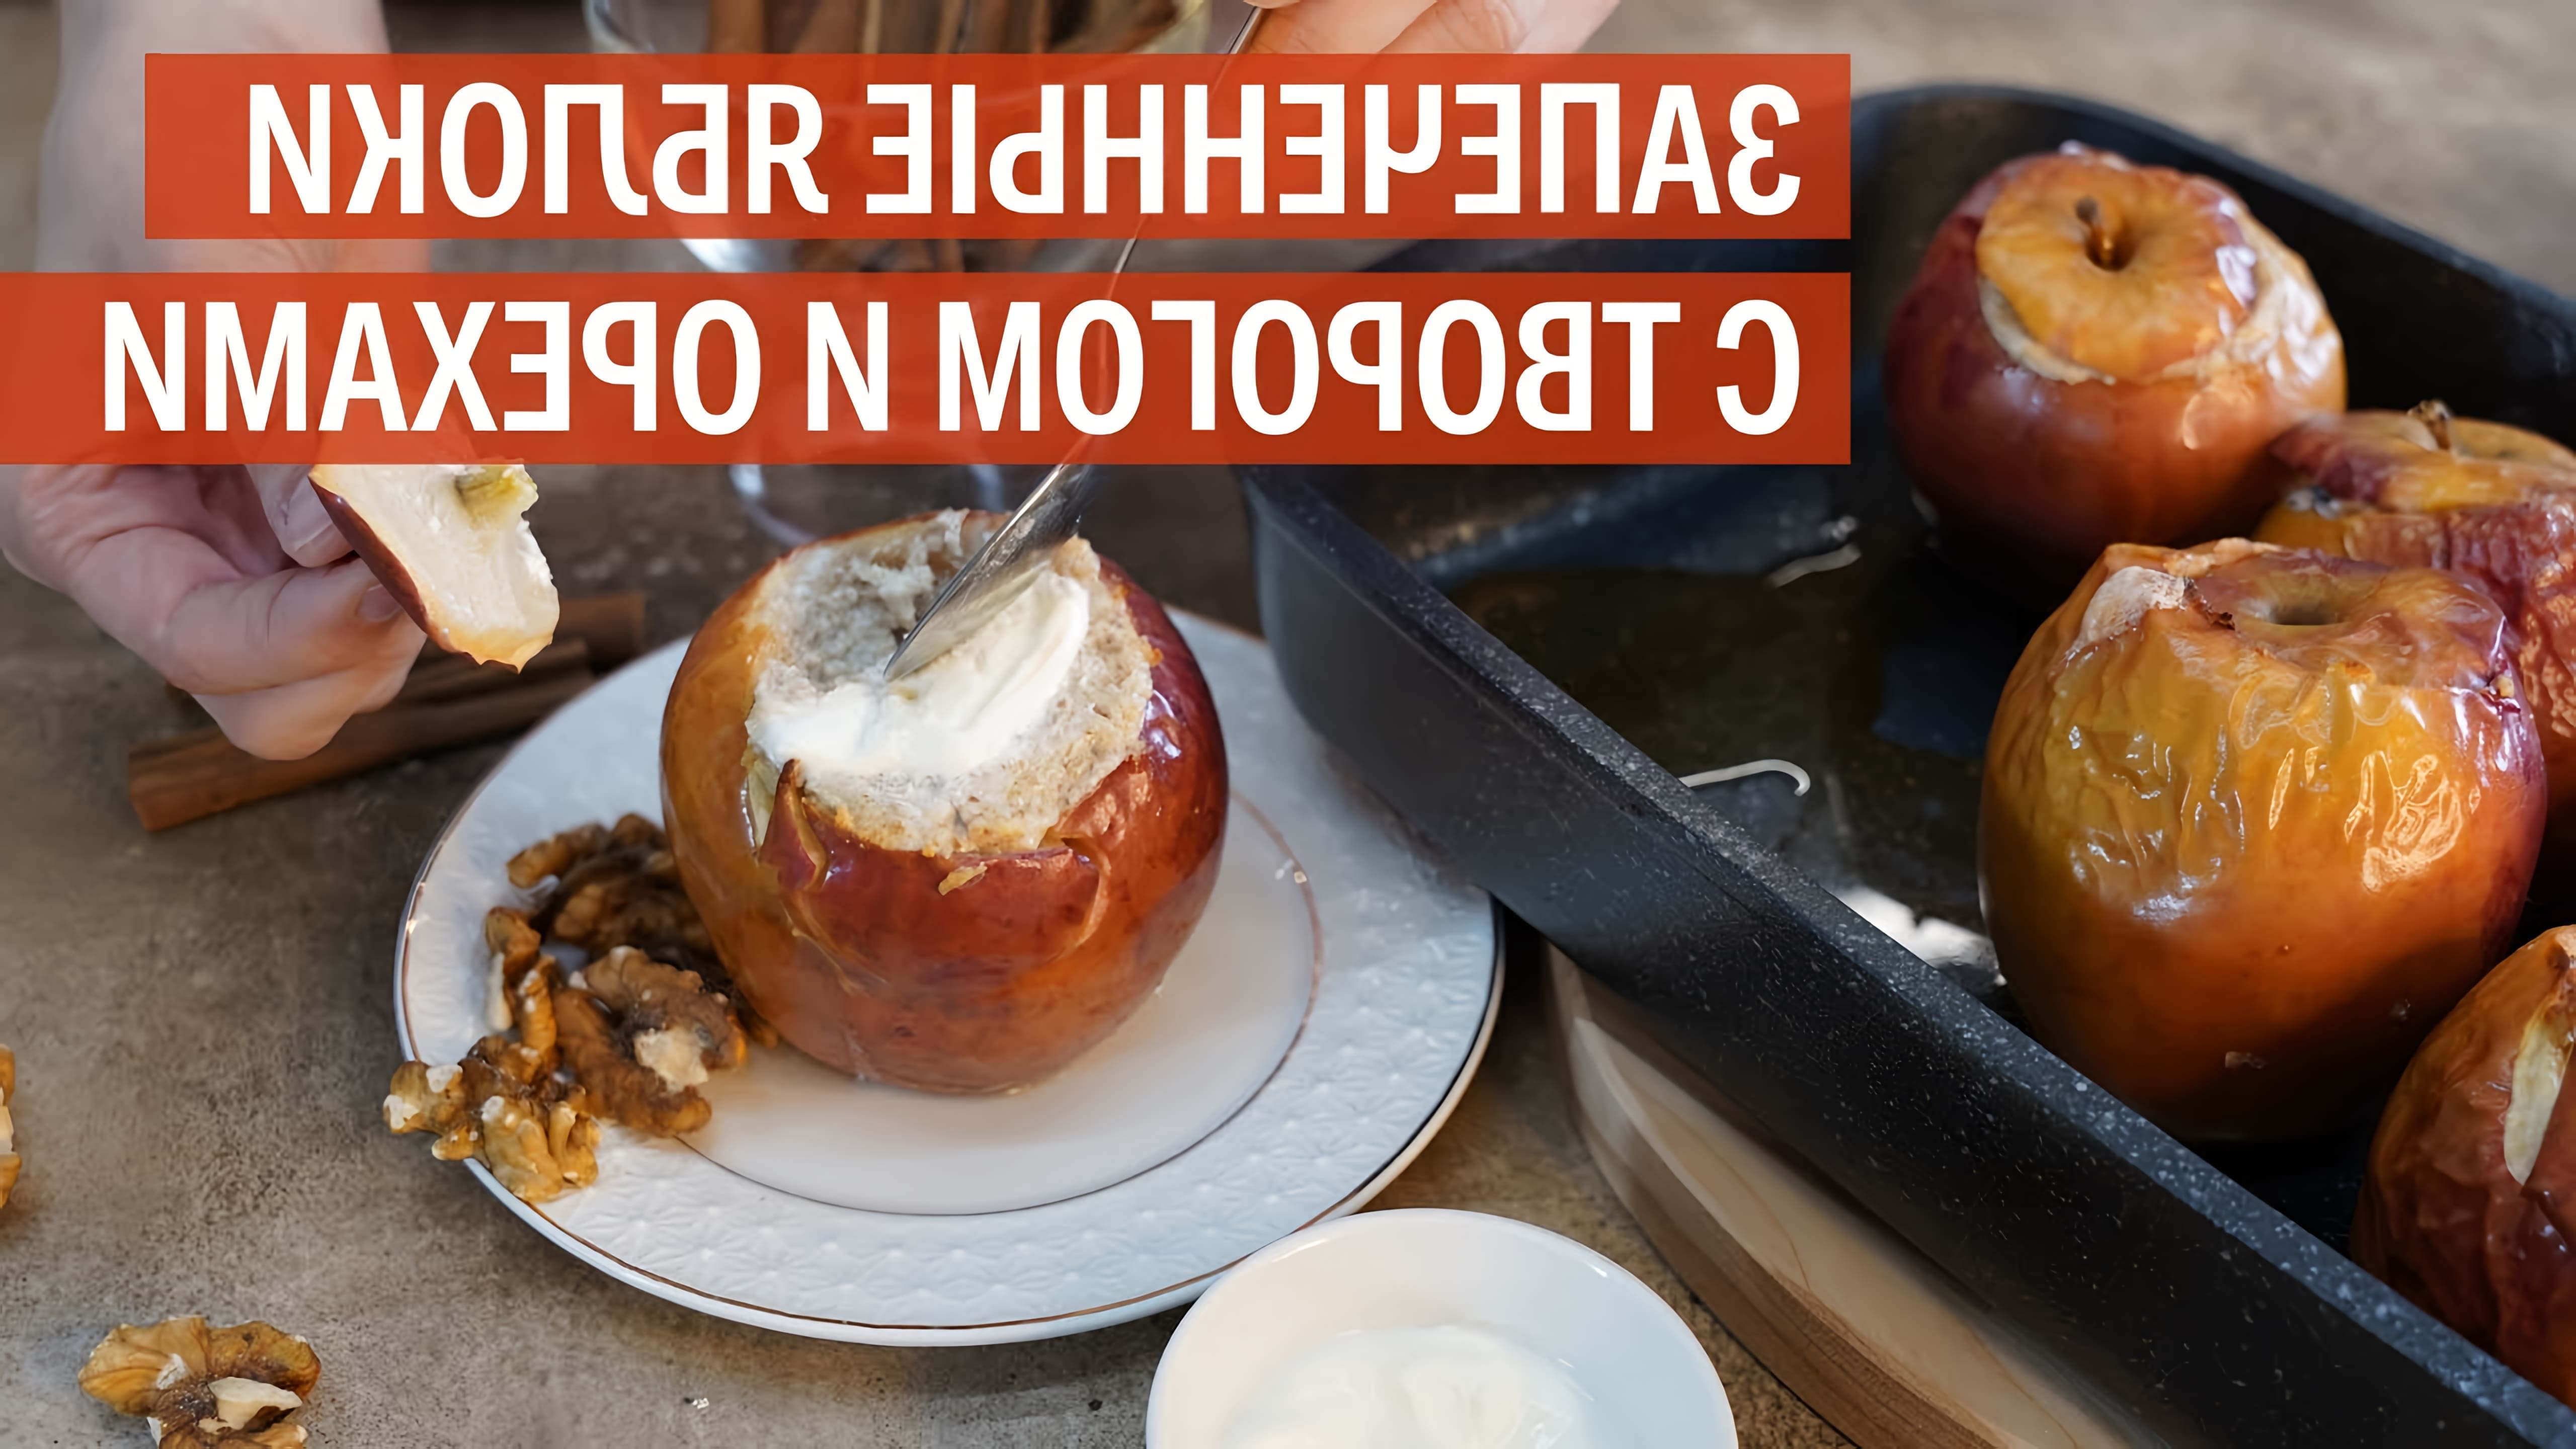 В этом видео-ролике KUKMARA делится рецептом запеченных яблок с творогом и орехами